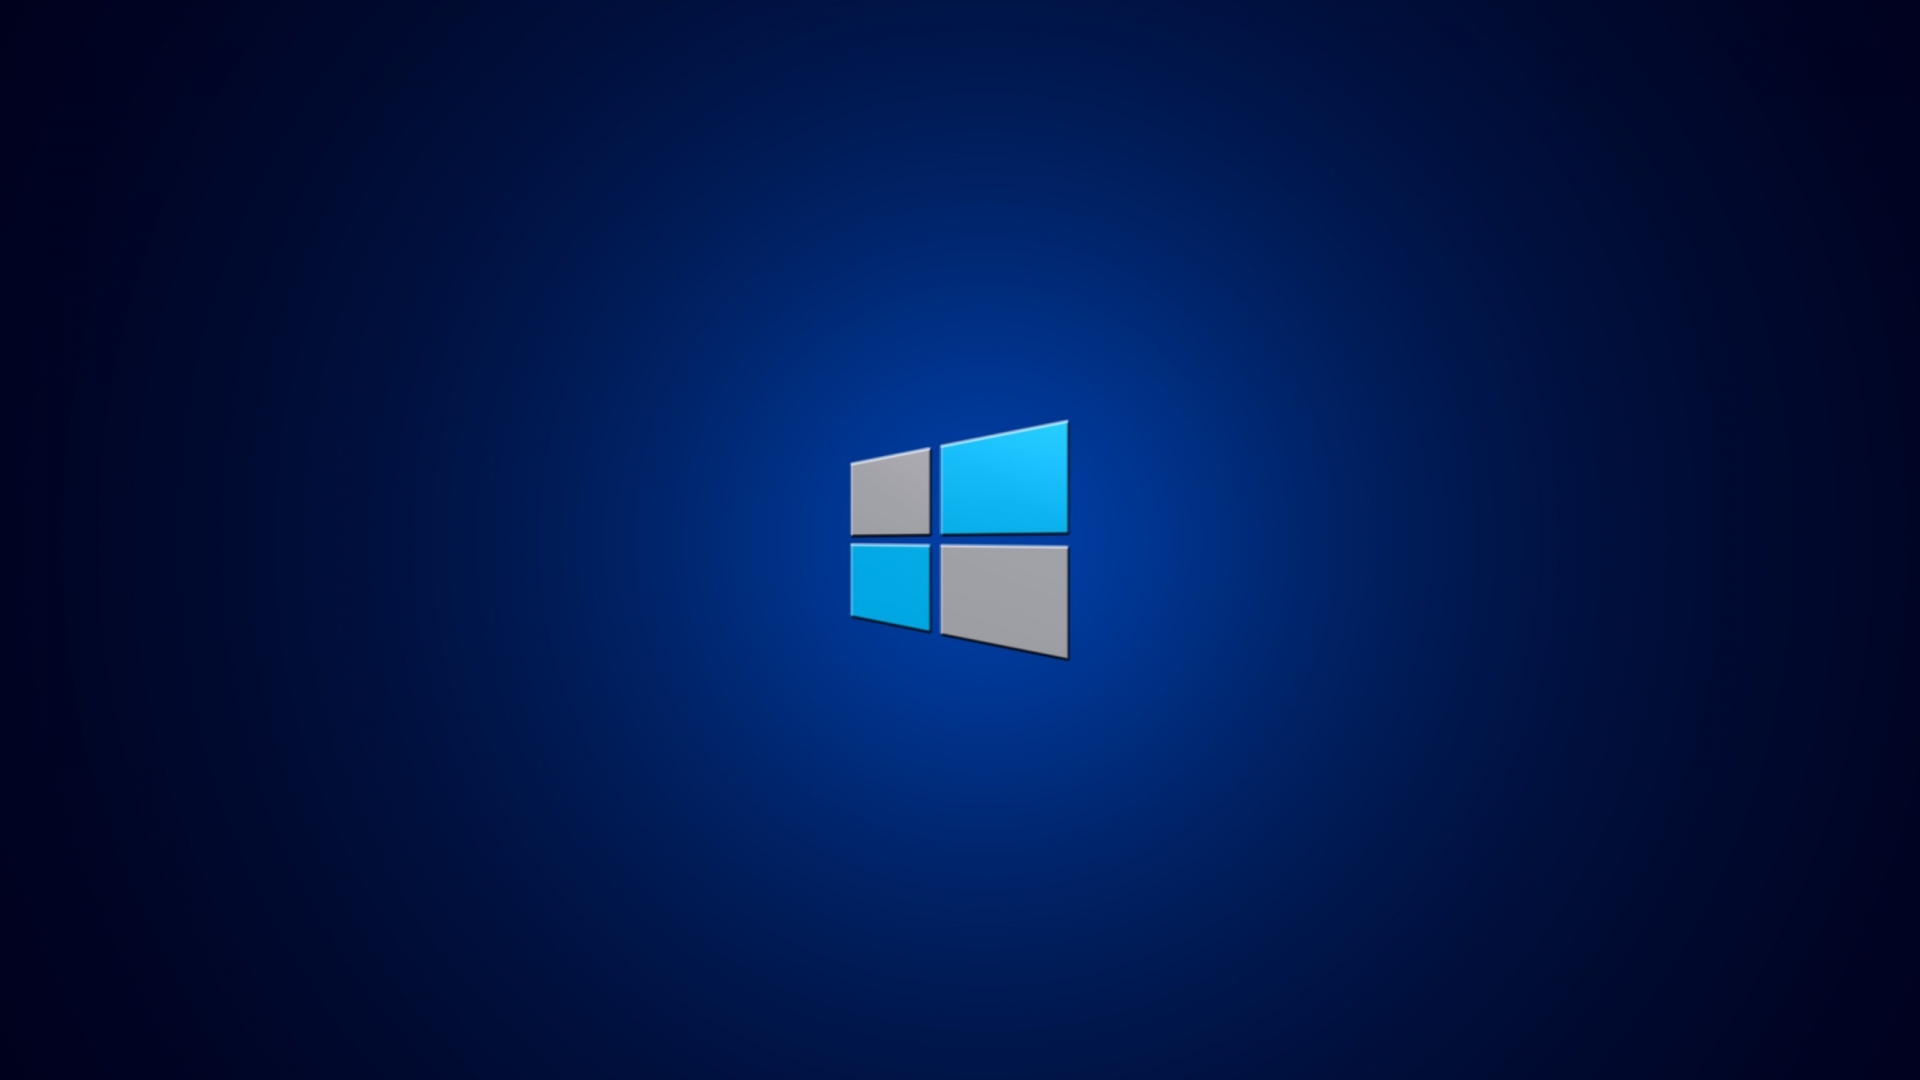 windows 8 1 hd wallpaper for your desktop background or desktop